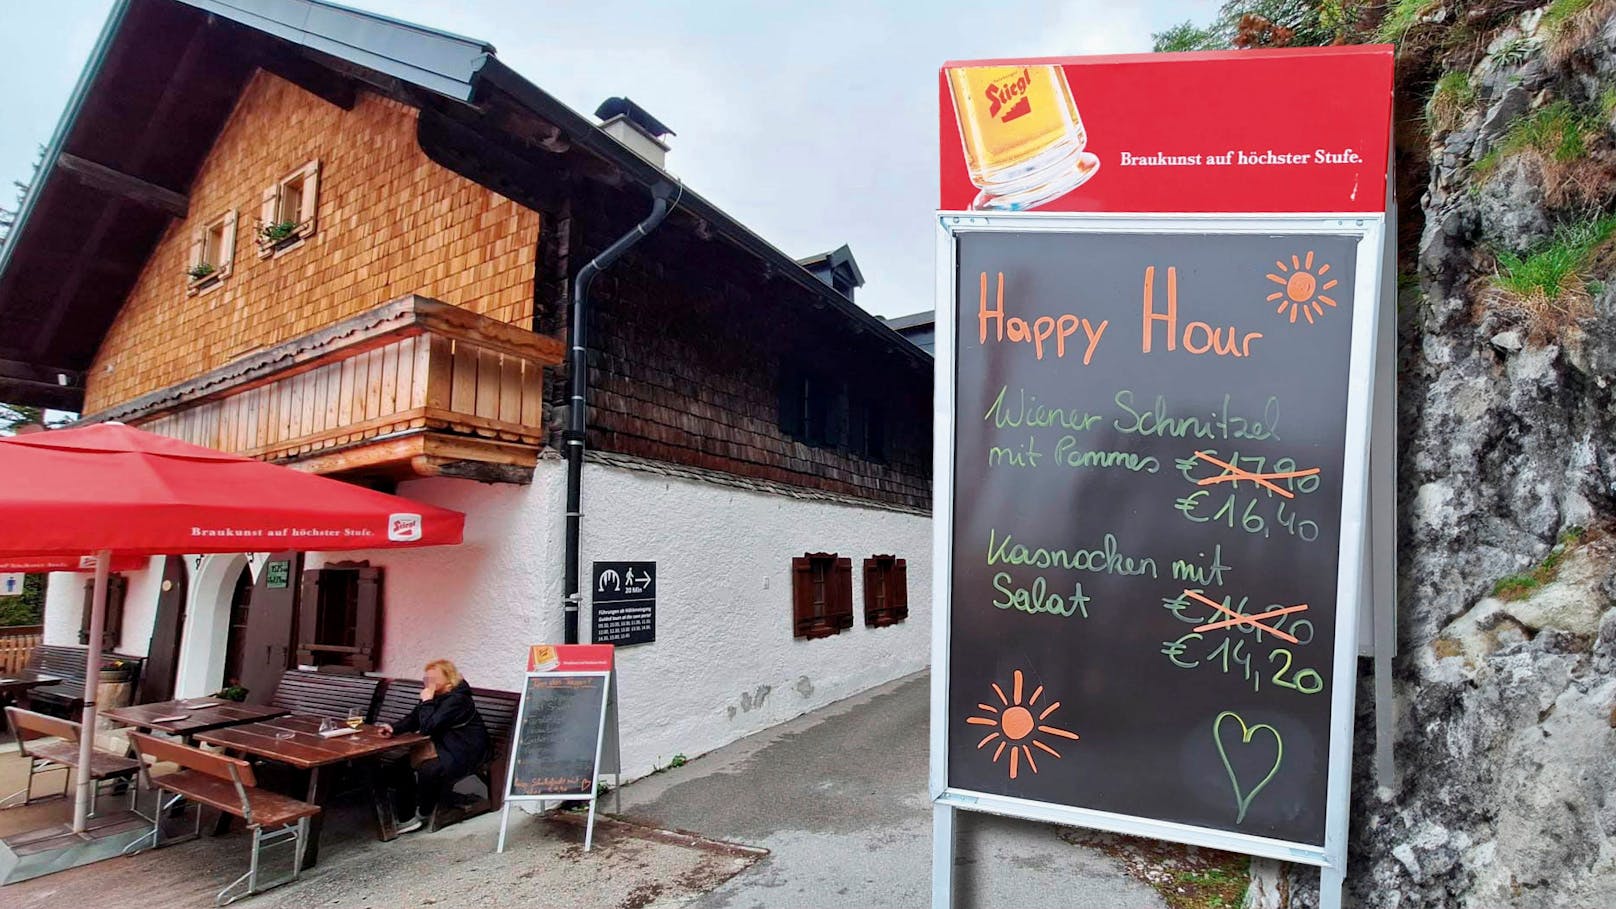 Wirt bietet Schnitzel in "Happy Hour" um 16,40 Euro an